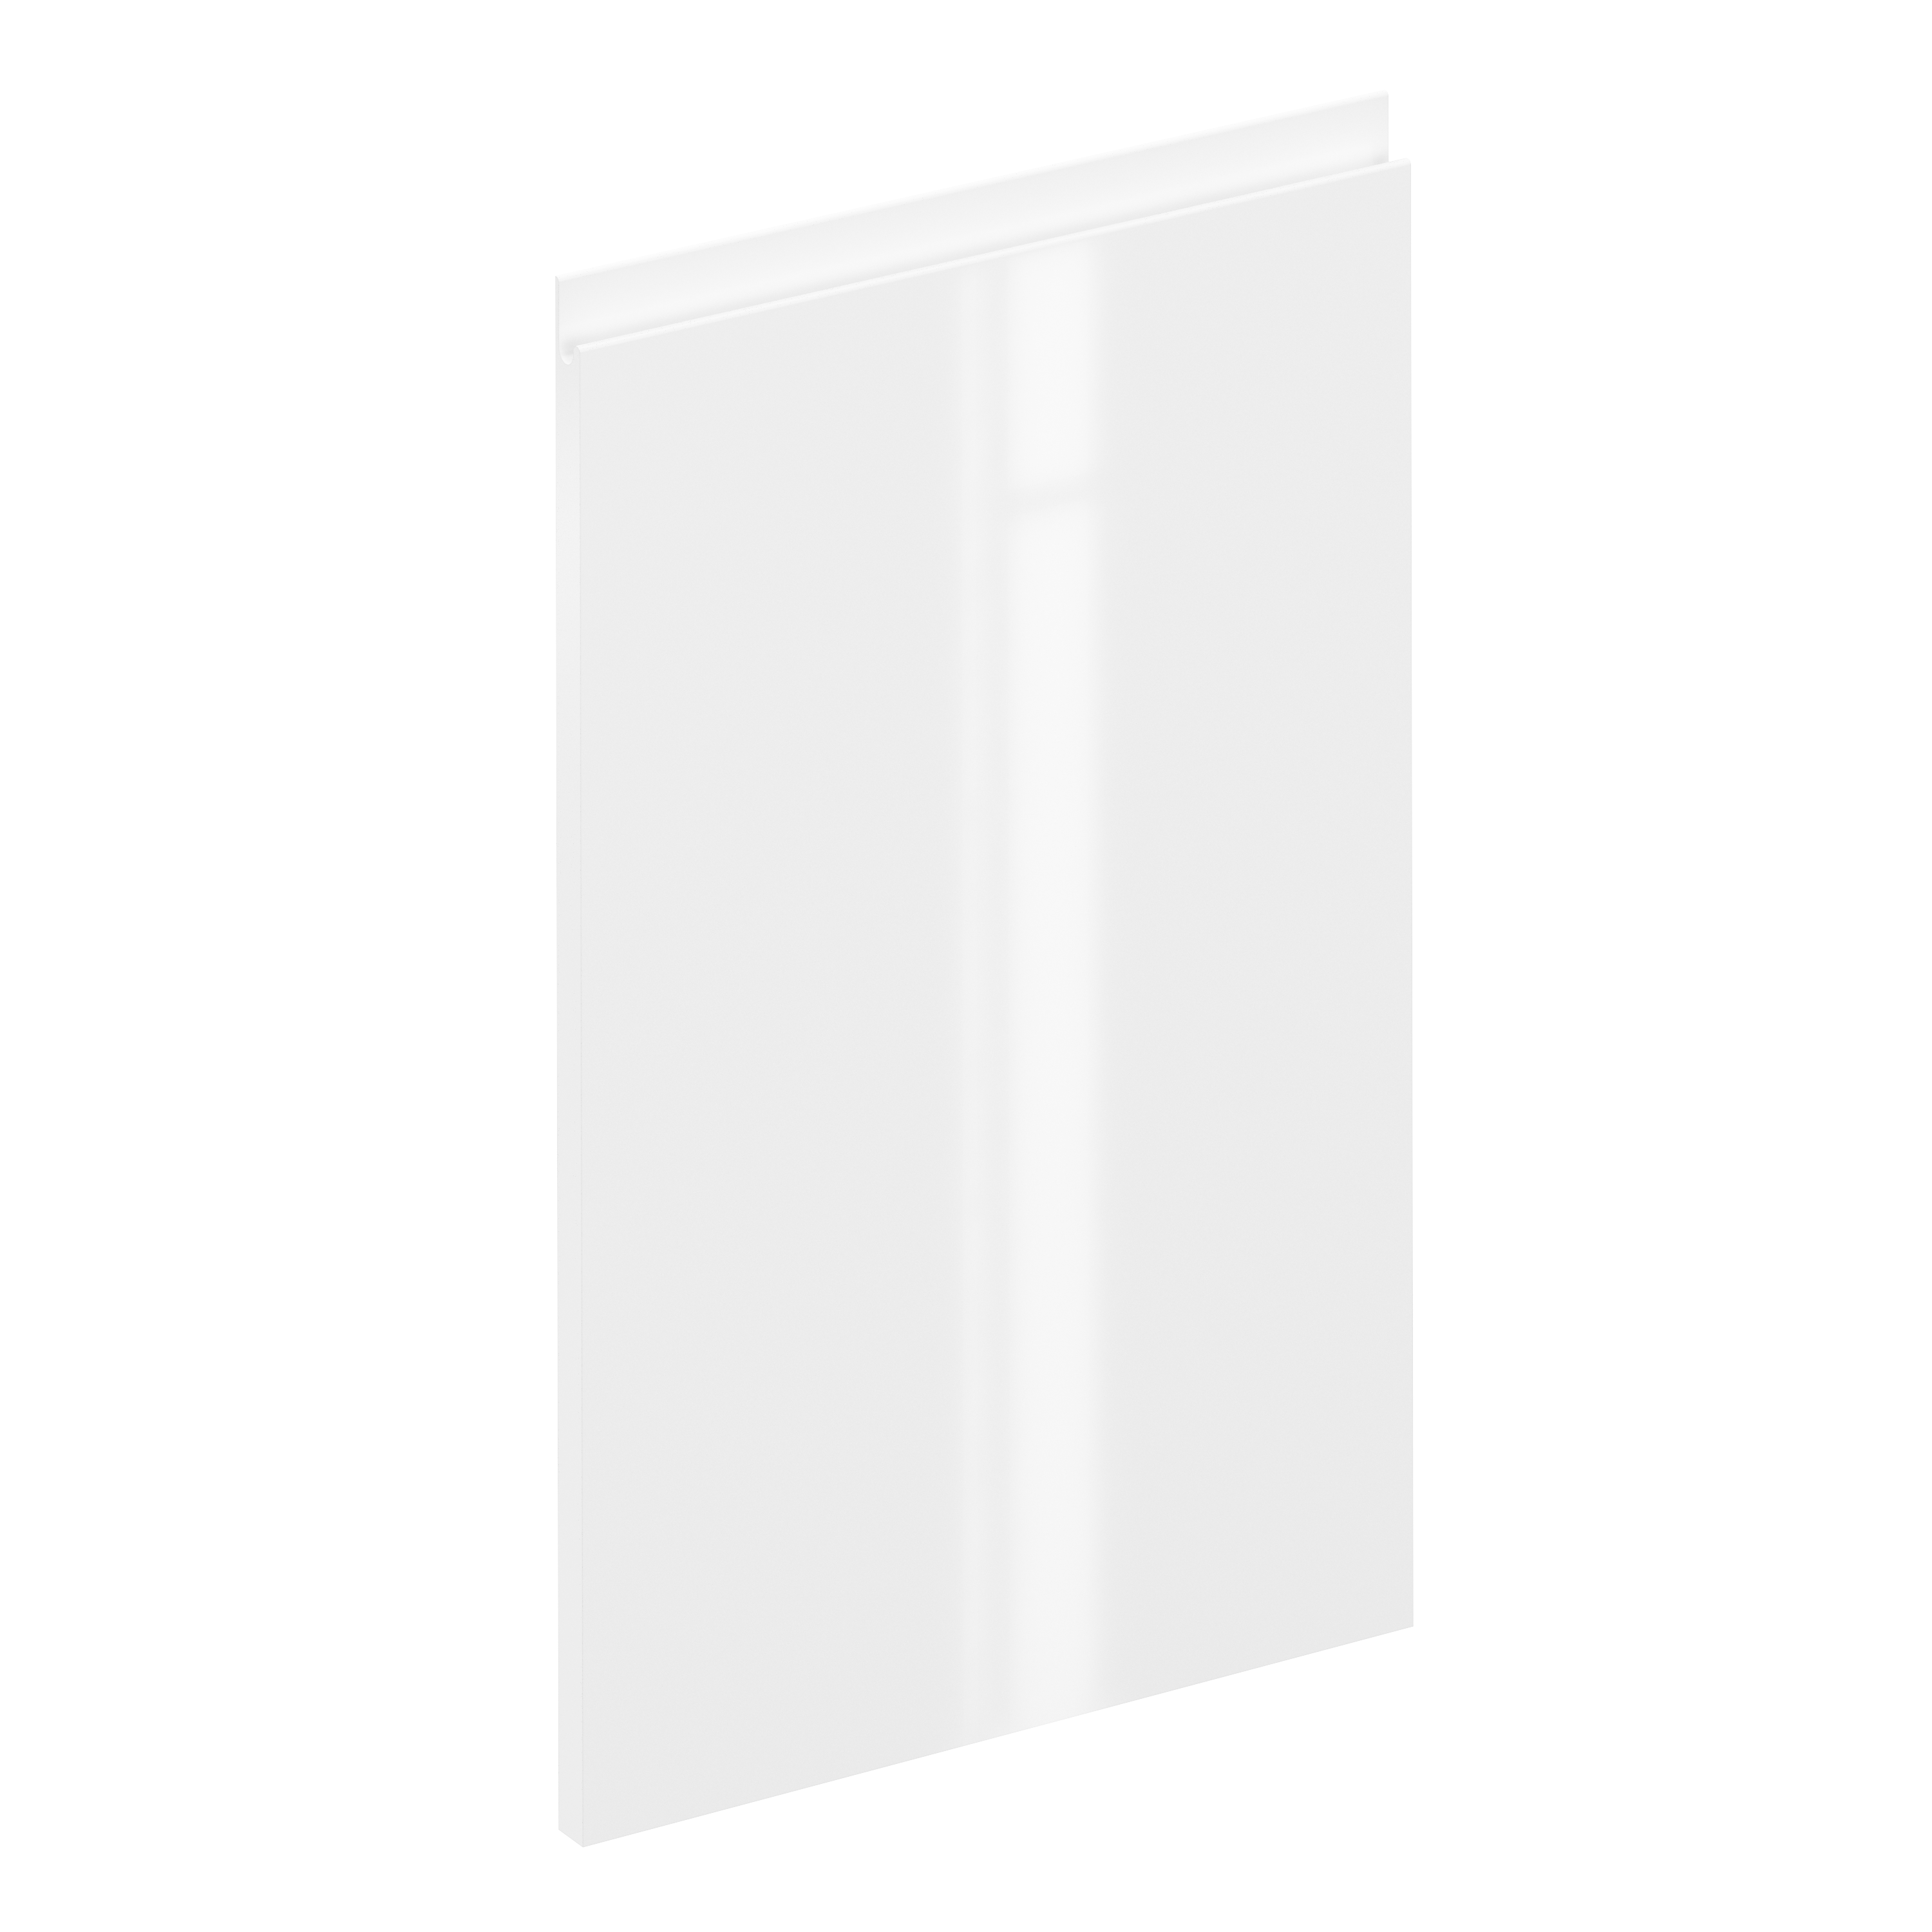 Puerta para mueble de cocina tokyo blanco brillo h 64 x l 40 cm